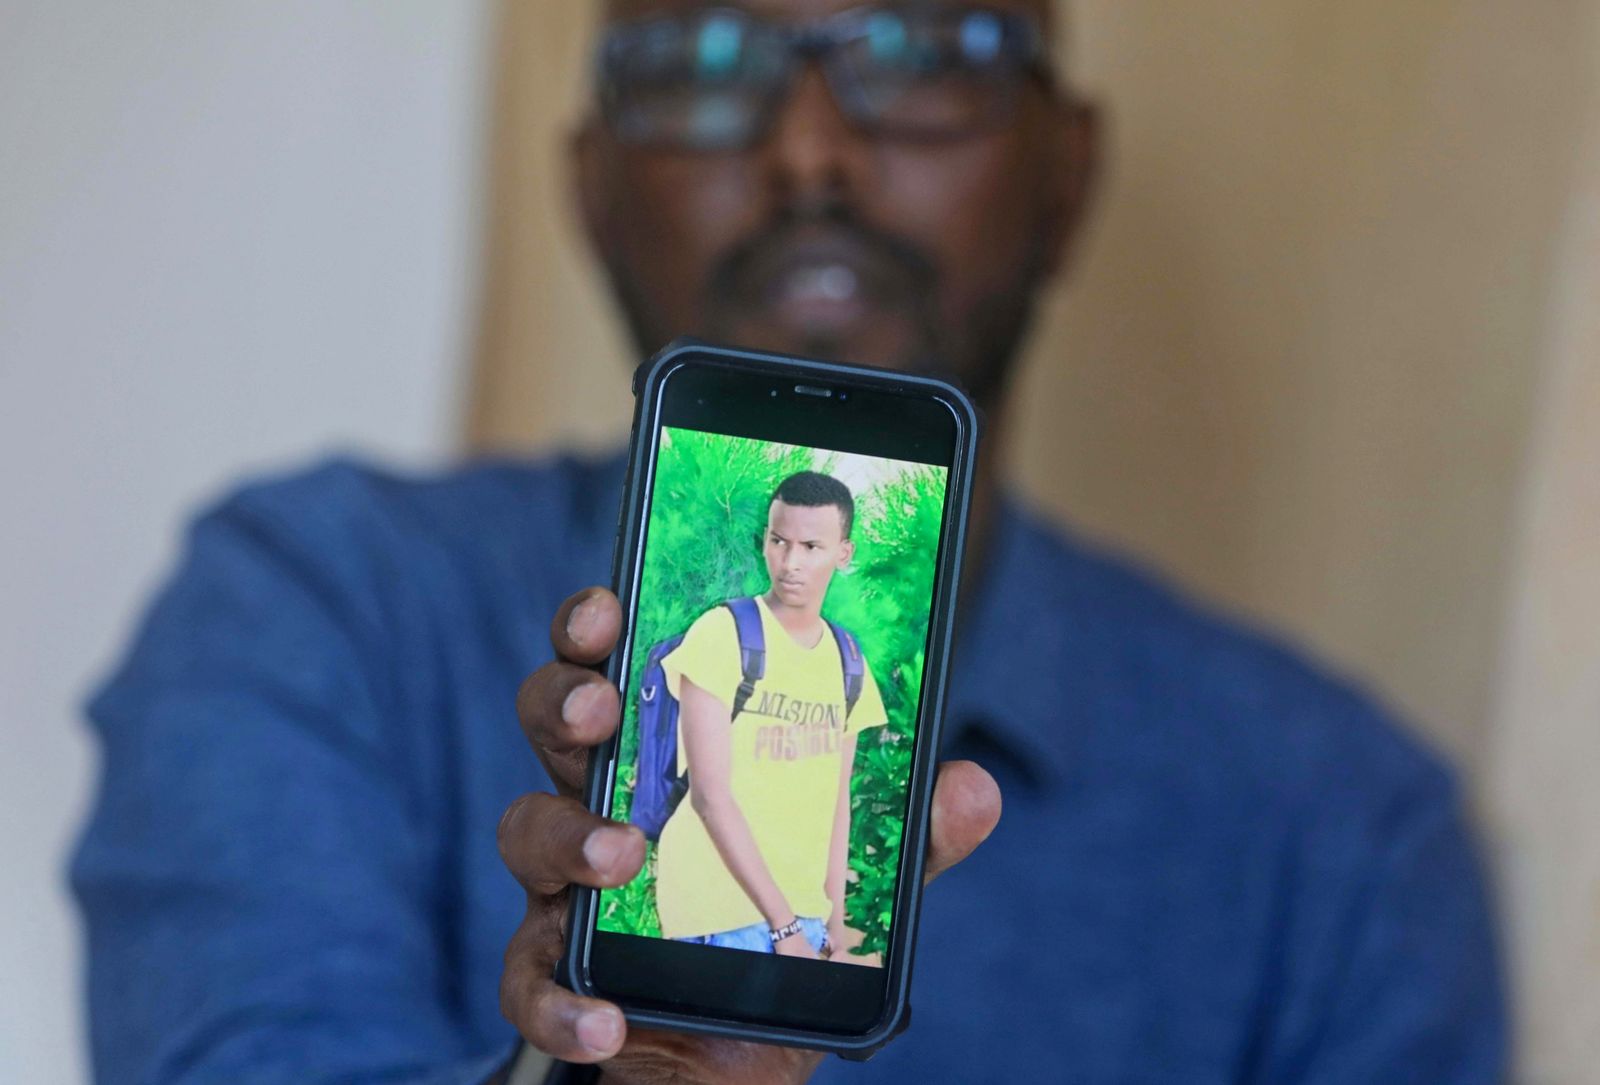 عبد السلام جوليد يحمل هاتفاً عليه صورة ابنه المفقود وذلك خلال مقابلة مع وكالة 